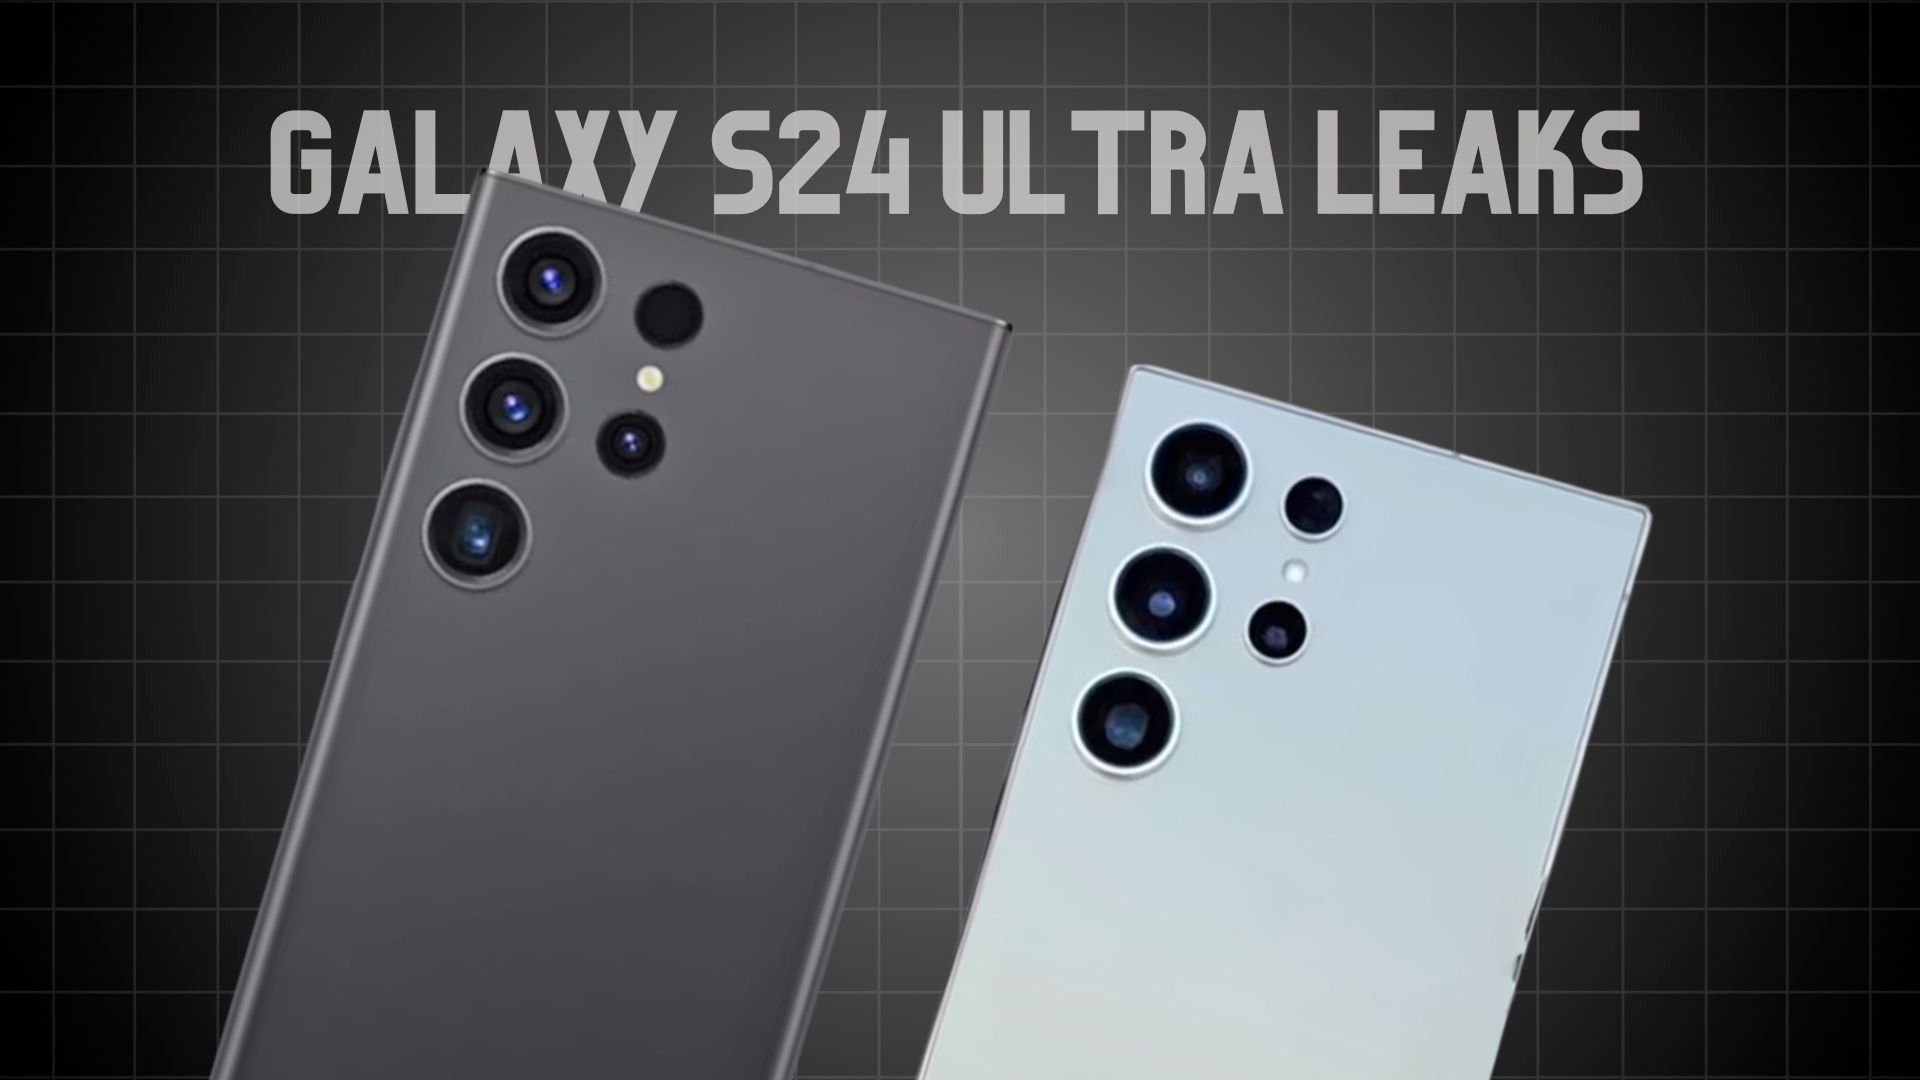 Galaxy S24 Ultra leaks